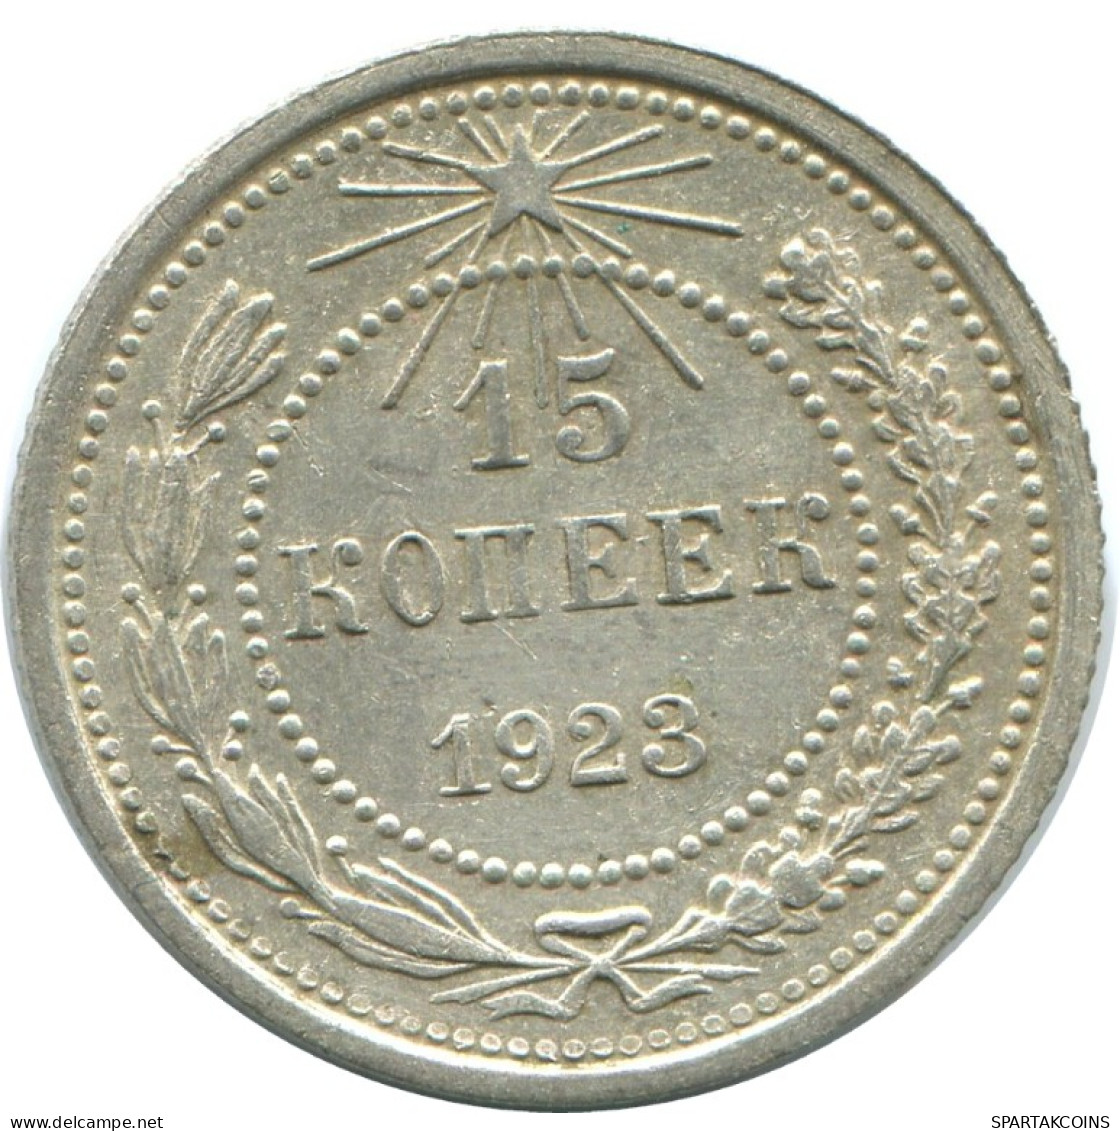 15 KOPEKS 1923 RUSSLAND RUSSIA RSFSR SILBER Münze HIGH GRADE #AF068.4.D.A - Russia